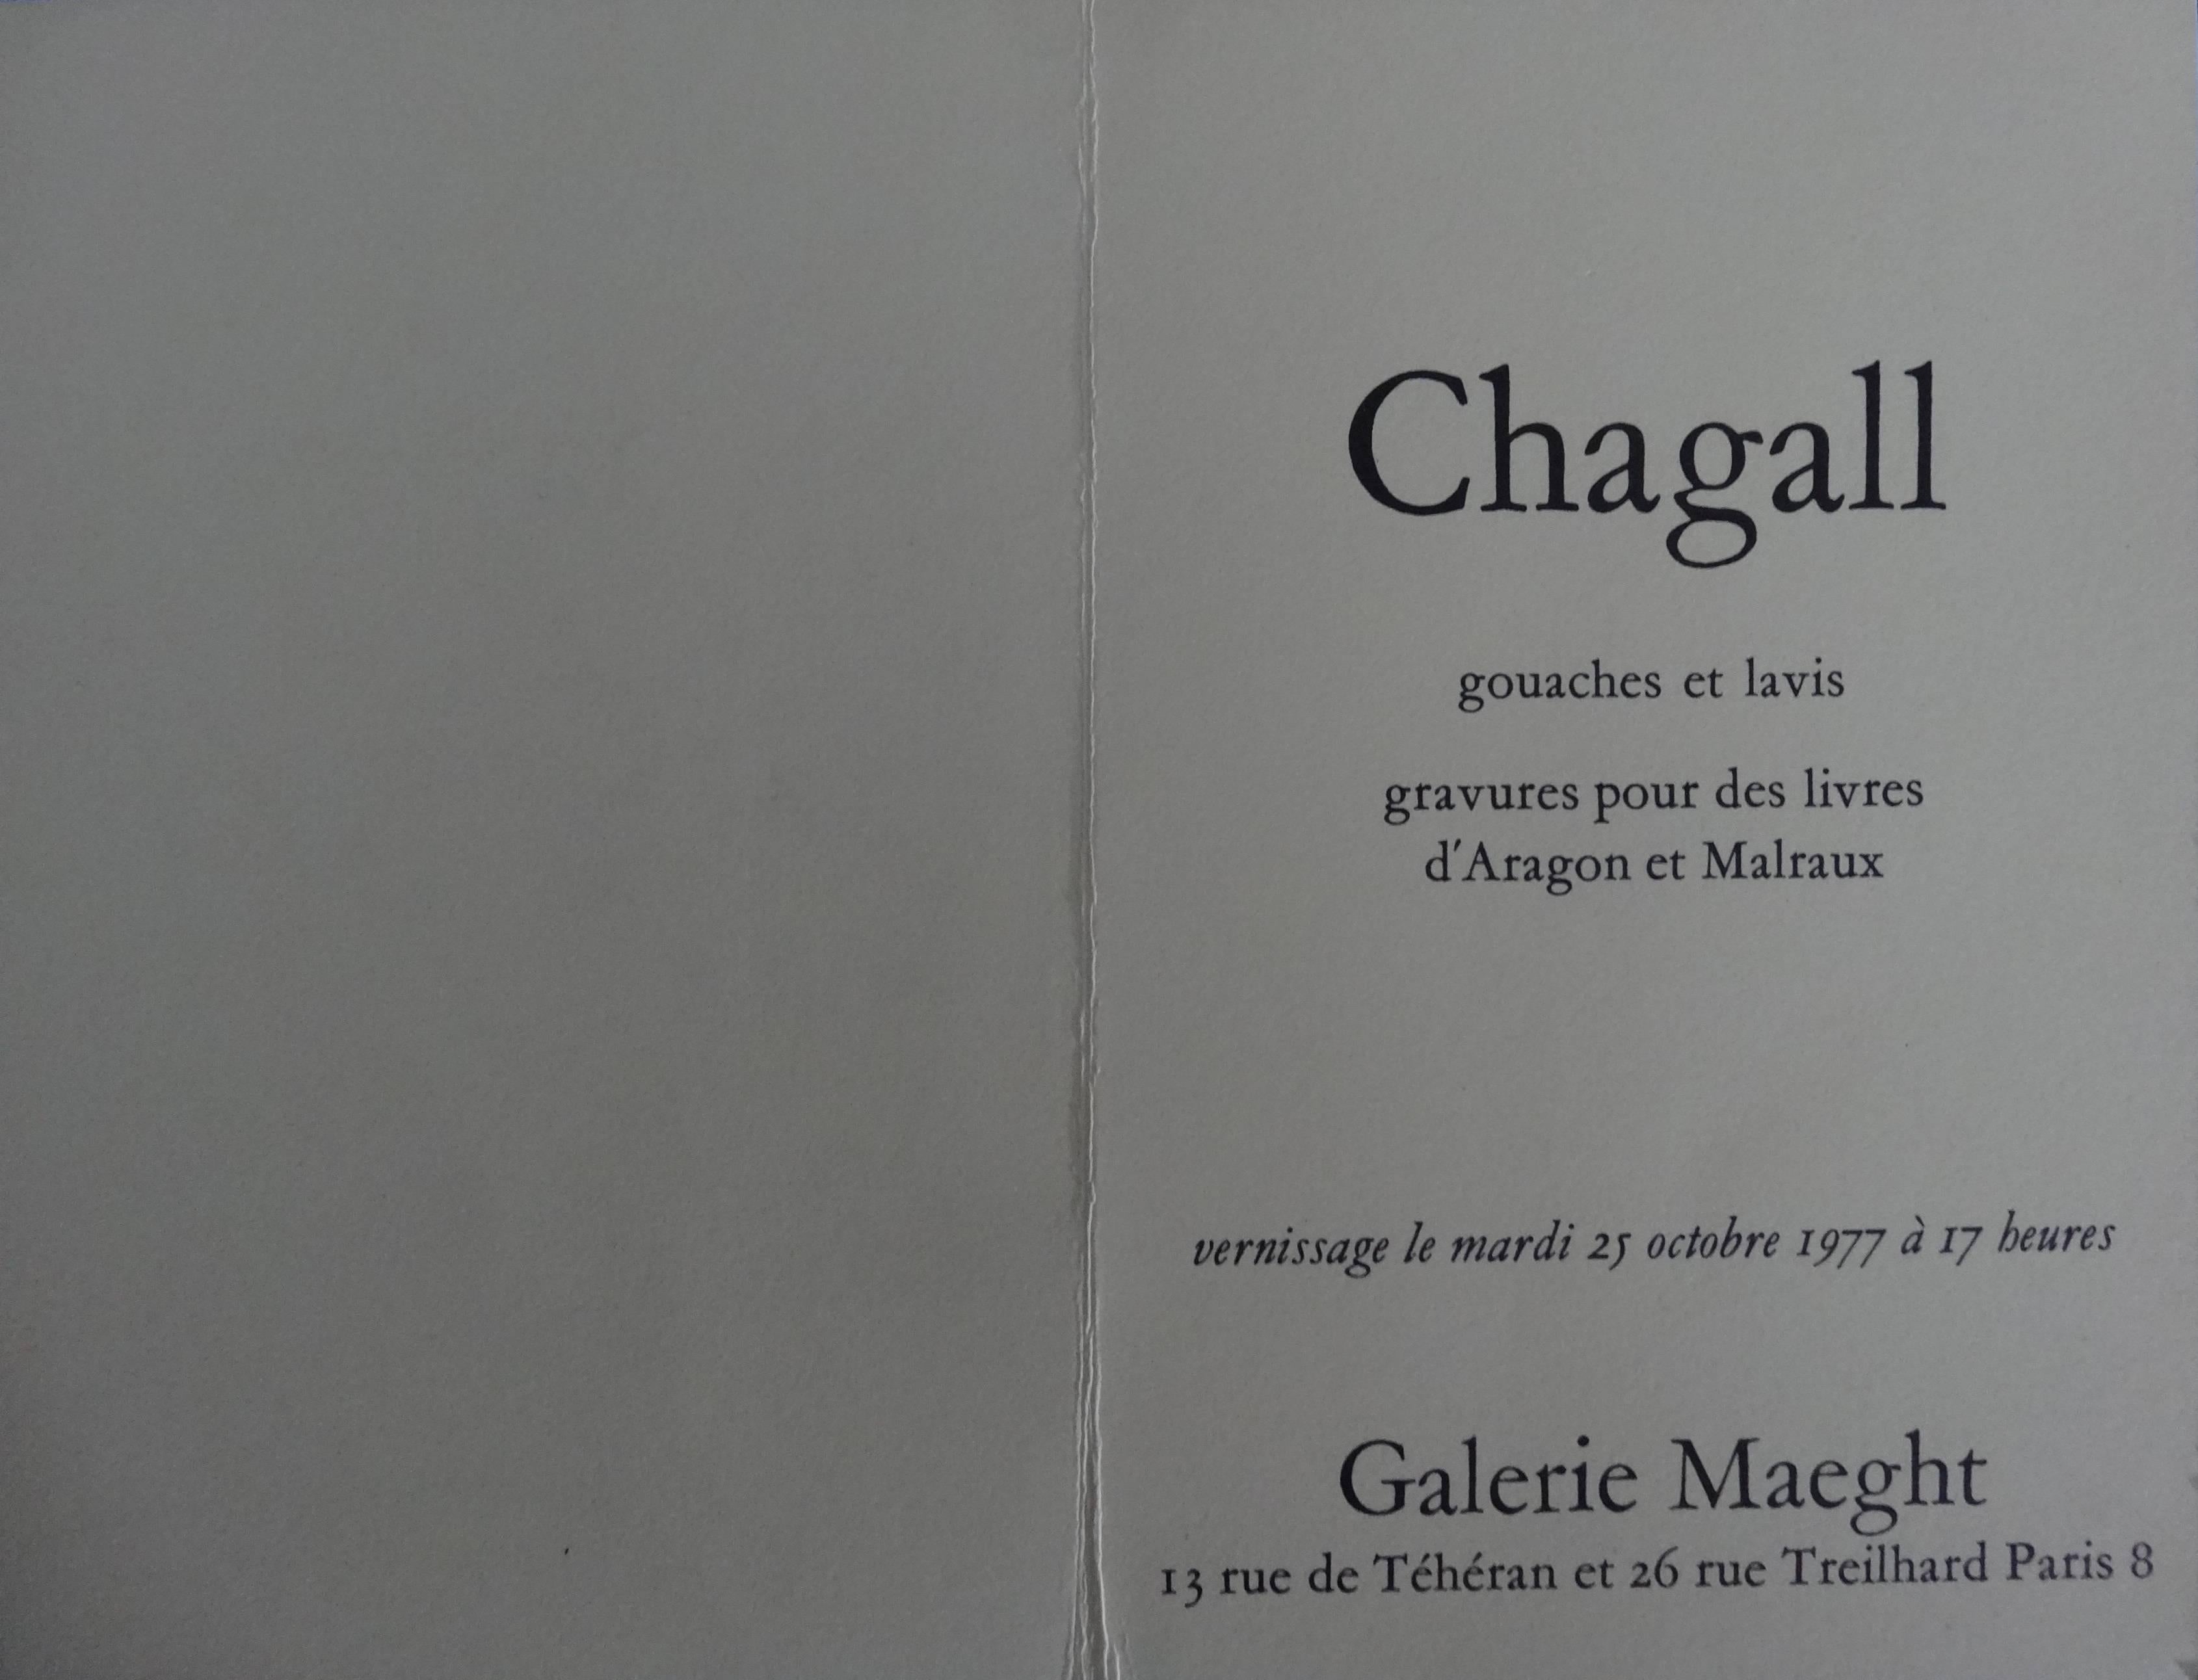 Marc Chagall (nach) 
Zeichner mit Palette

Farblithographie nach einem Aquarell
Gedruckt bei Ateliers Arte / Maeght
15.5 x 10 cm (offen 15,5 x 20 cm) / ca. 6 x 4 in (offenes Format ca. 6 x 8 in)

Lithographie zur Eröffnung der Ausstellung 